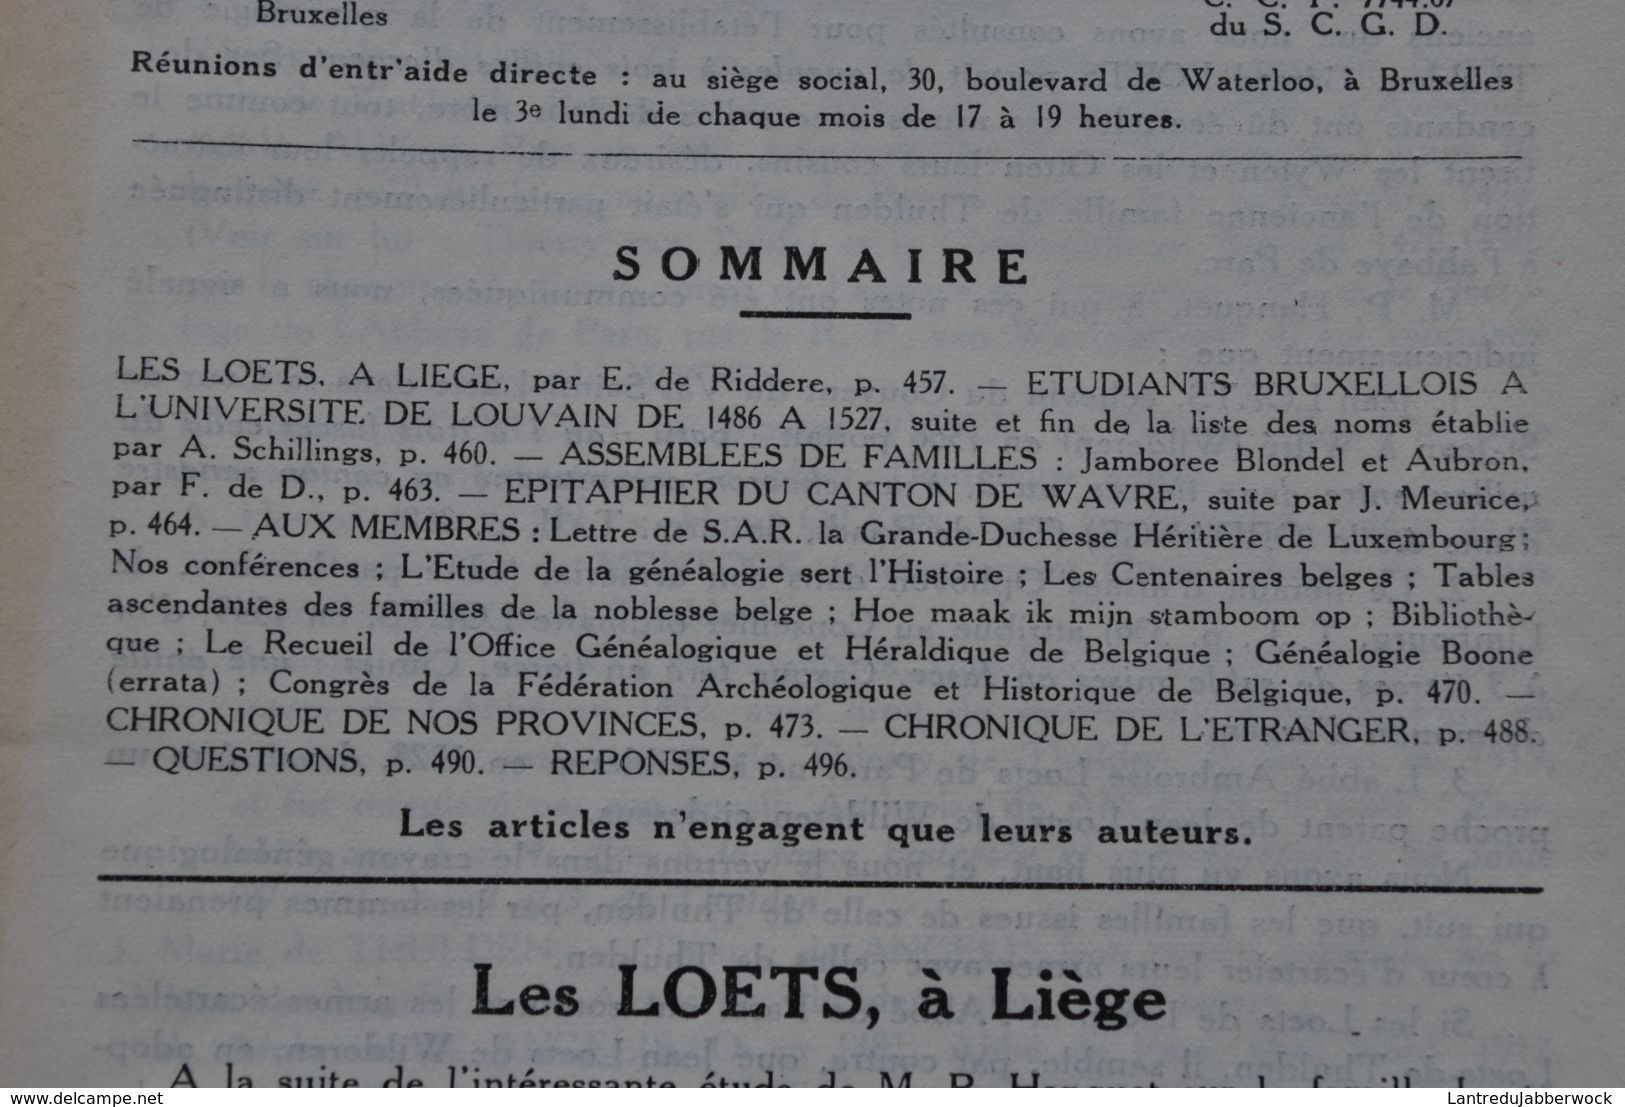 L' INTERMEDIAIRE DES GENEALOGISTES 46 1953 Généalogie Héraldique Epitaphier Wavre LOETS Liège Université De Louvain 1486 - Histoire